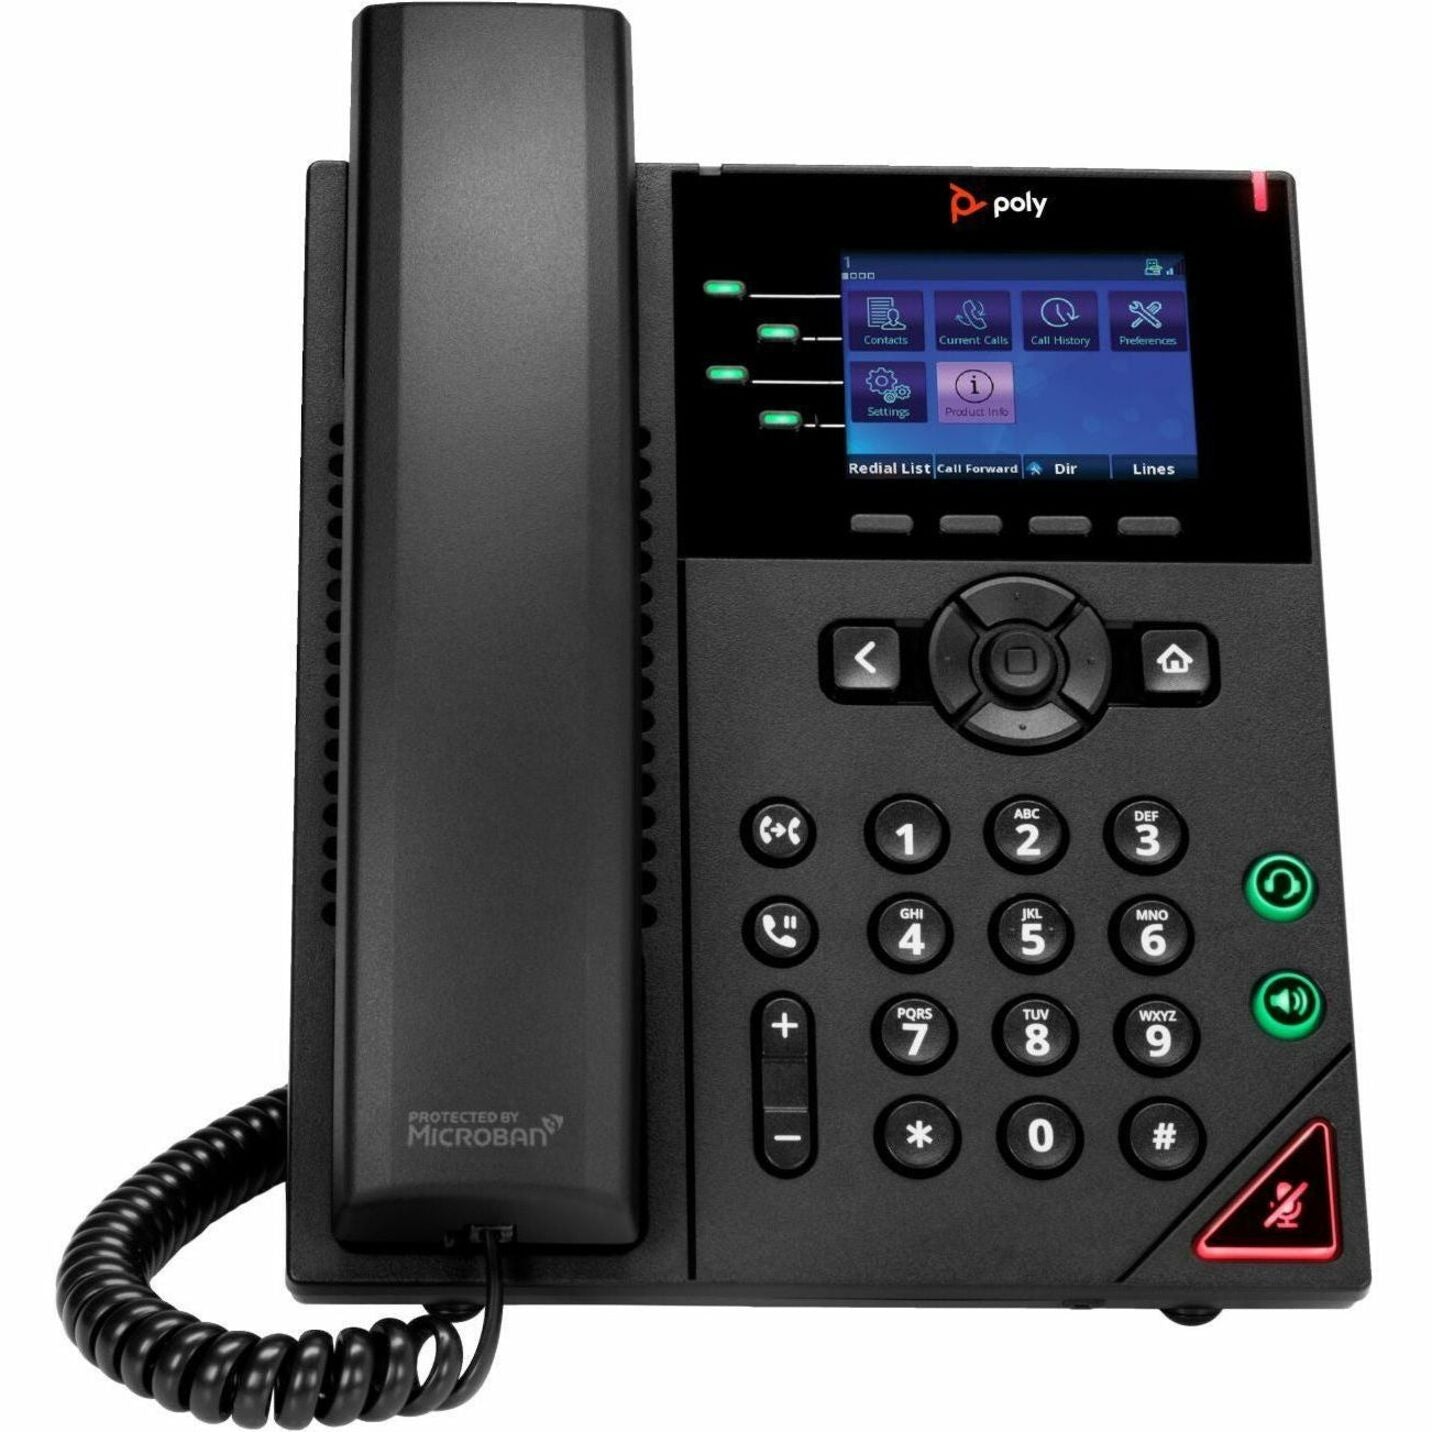 Poliestere 89B58AA OBi VVX 250 Telefono IP a 4 linee e PoE abilitato da scrivania con cavo montabile a parete nero